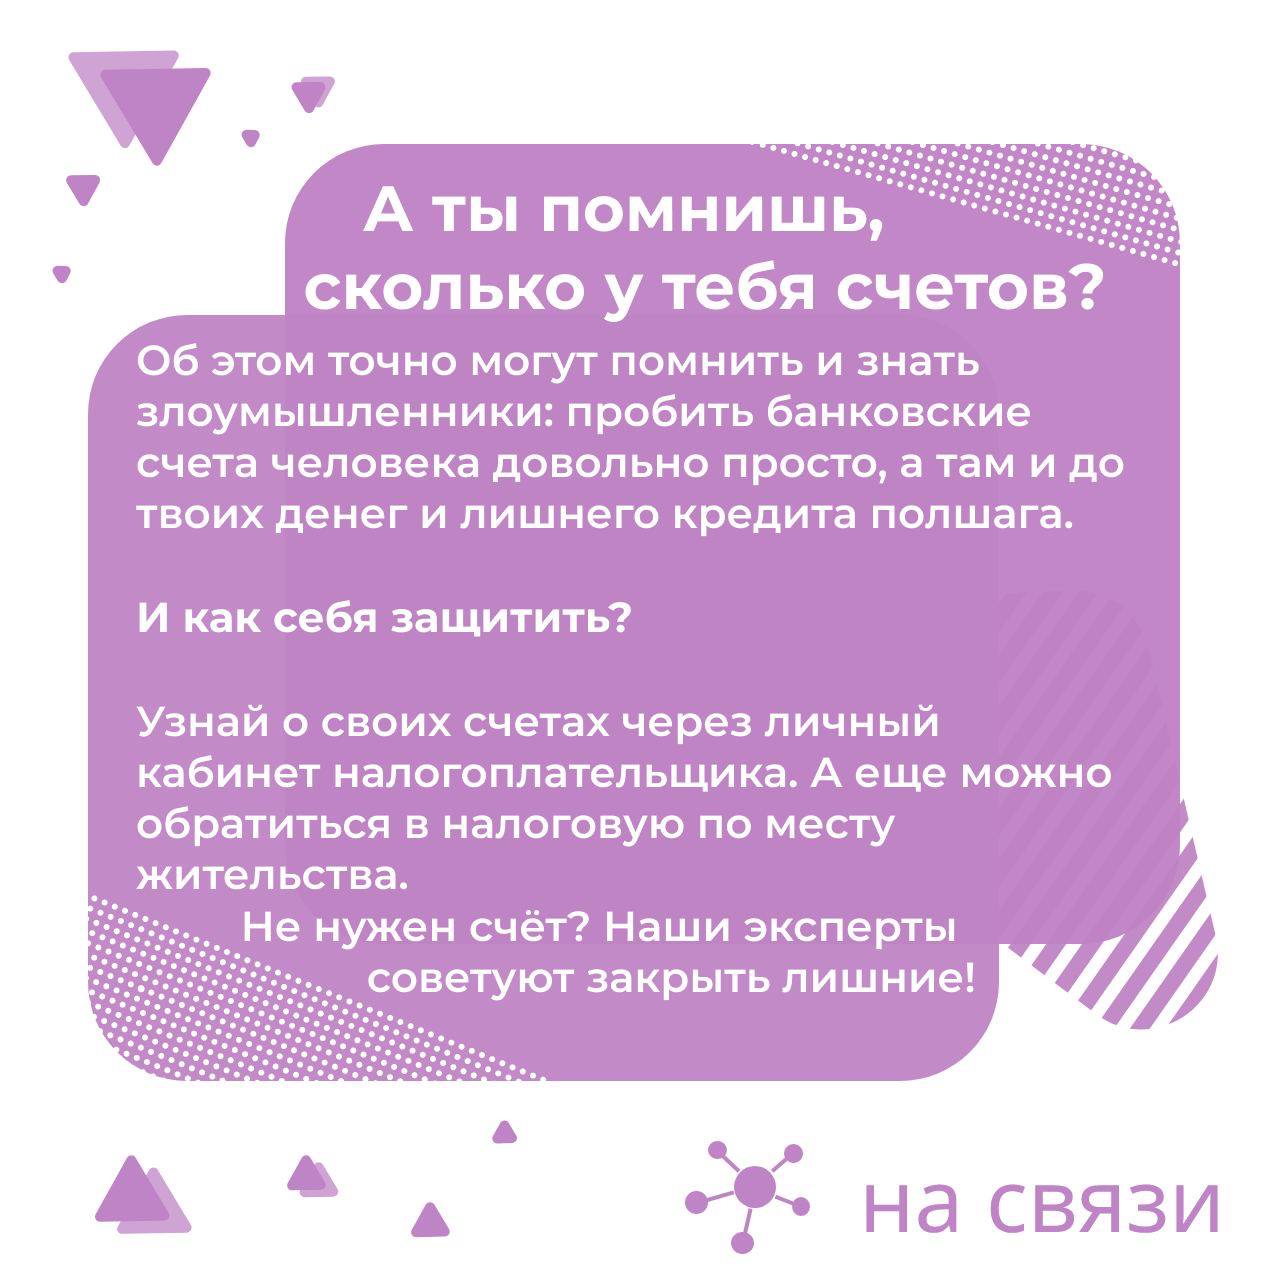 Техподдержка телеграмма на русском онлайн фото 105